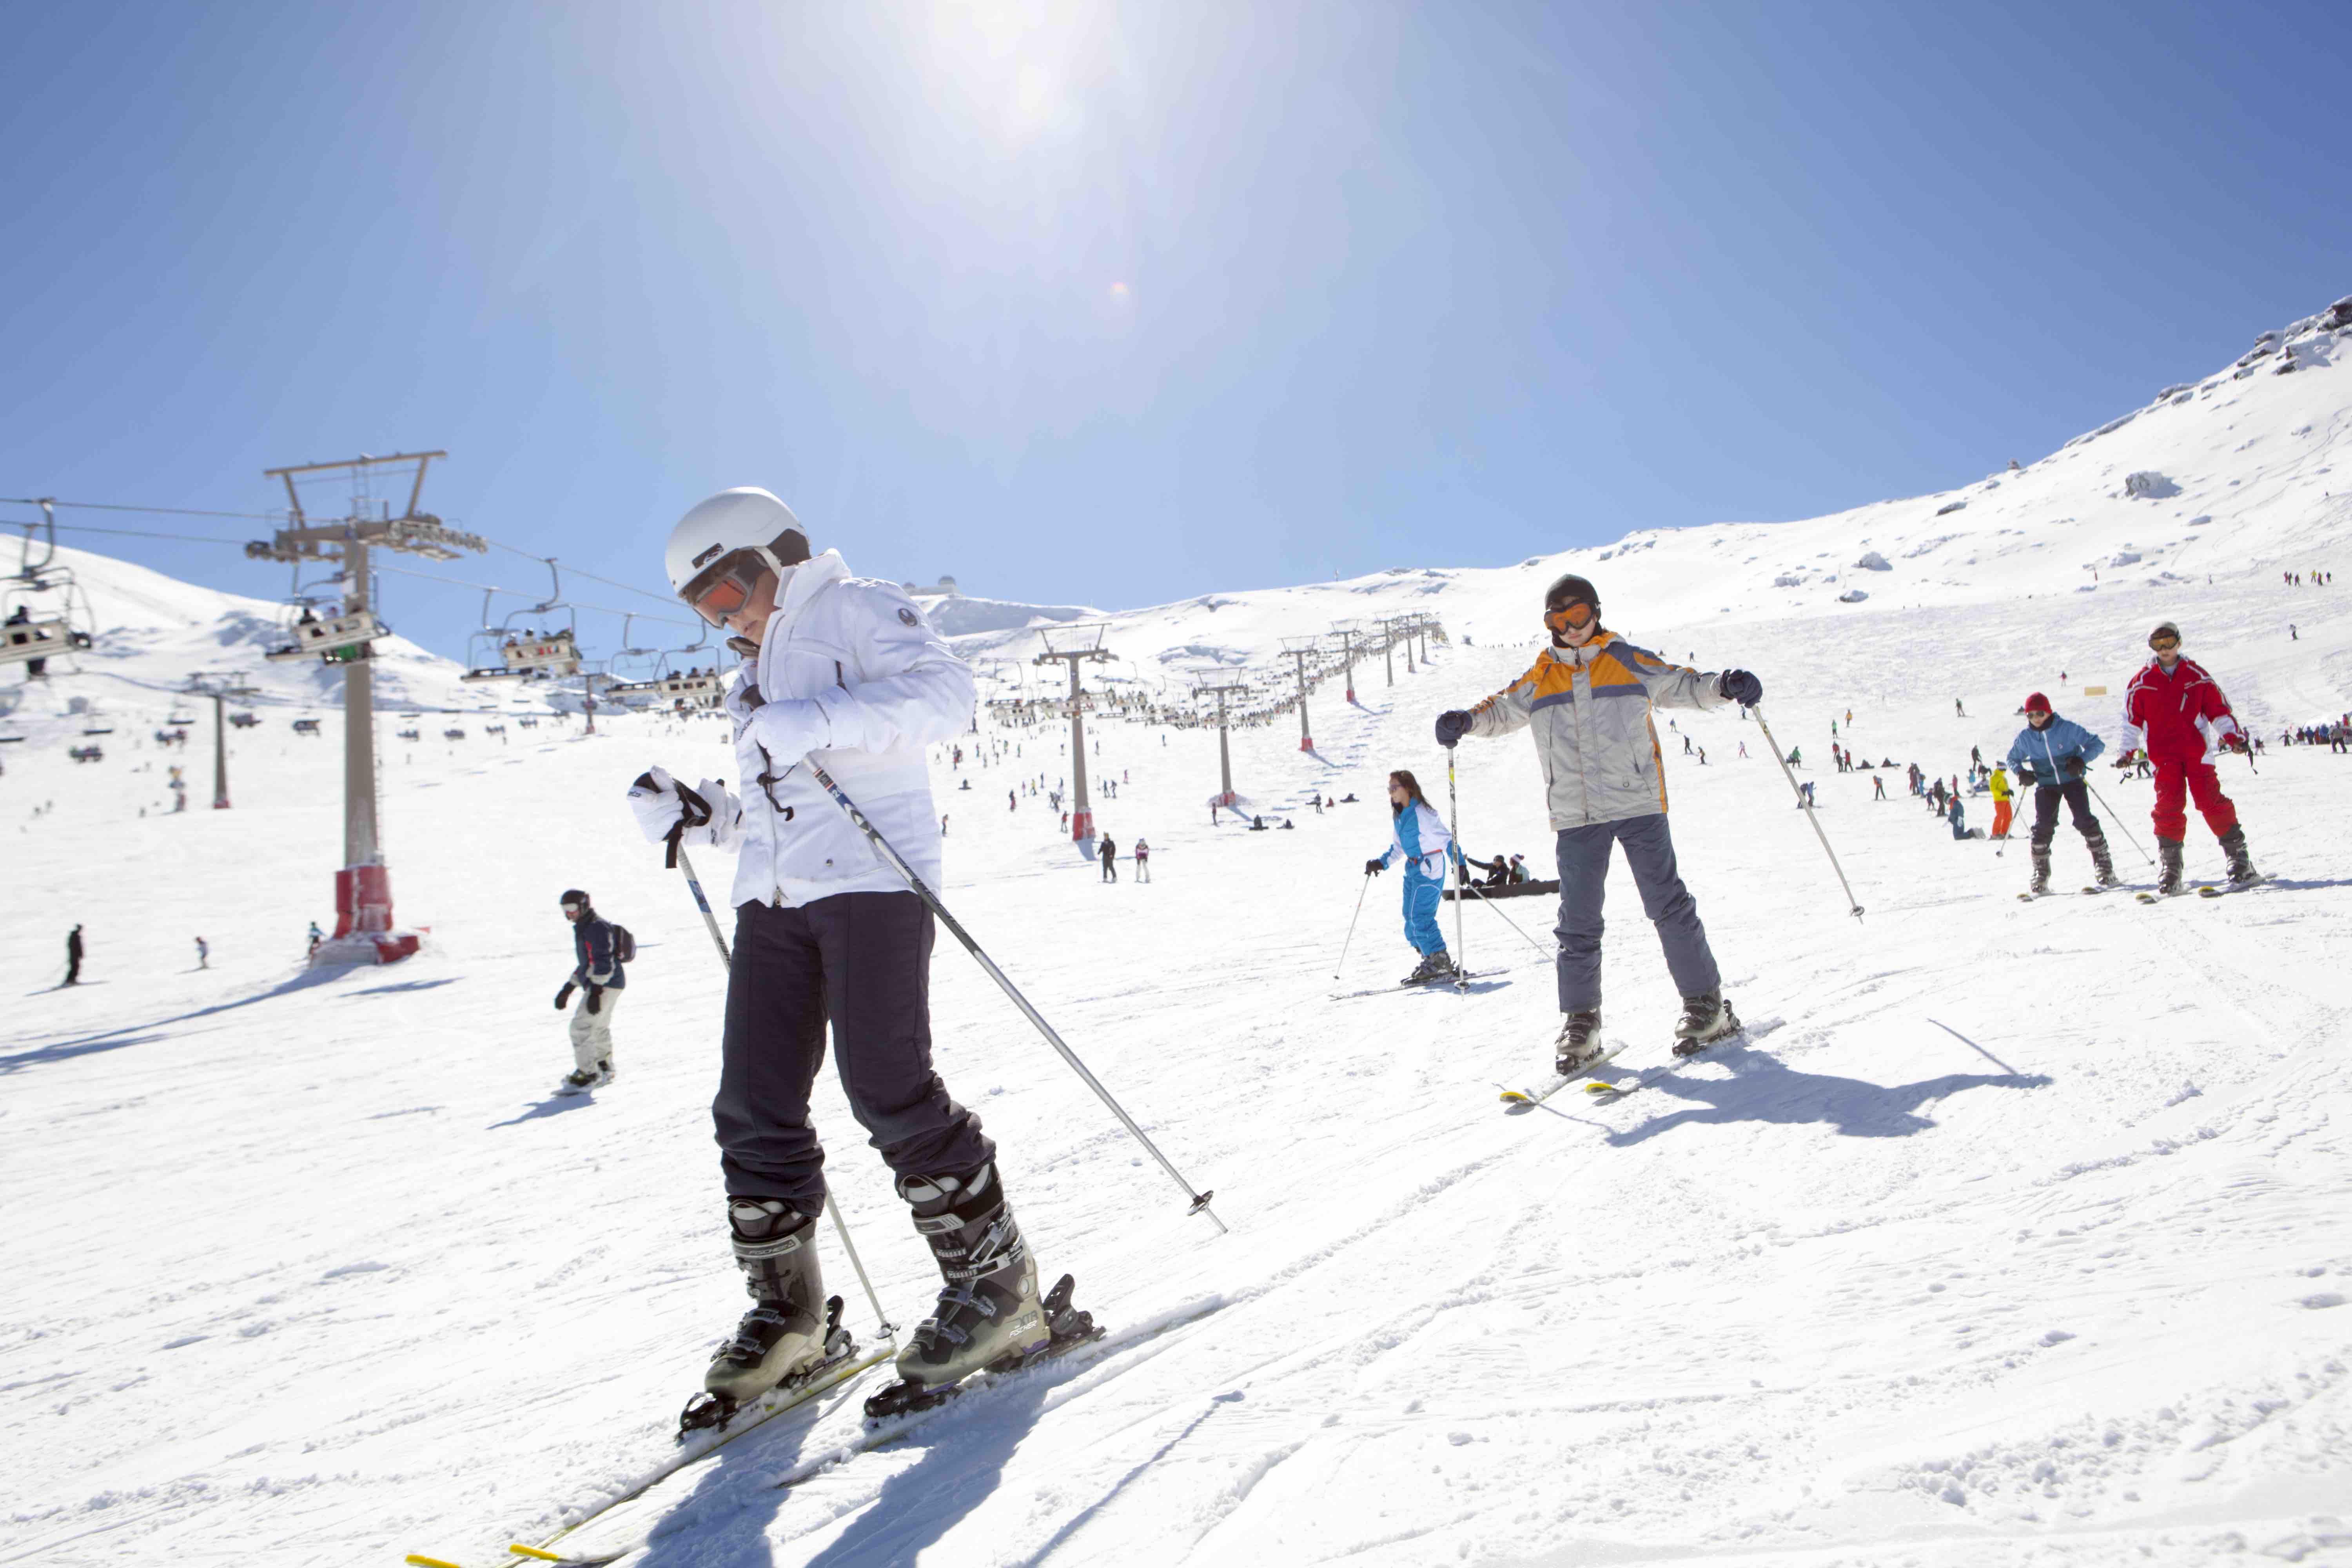 Esquiadores en la nieve, en la estación de esquí de Sierra Nevada, en una imagen de Turismo Andaluz.